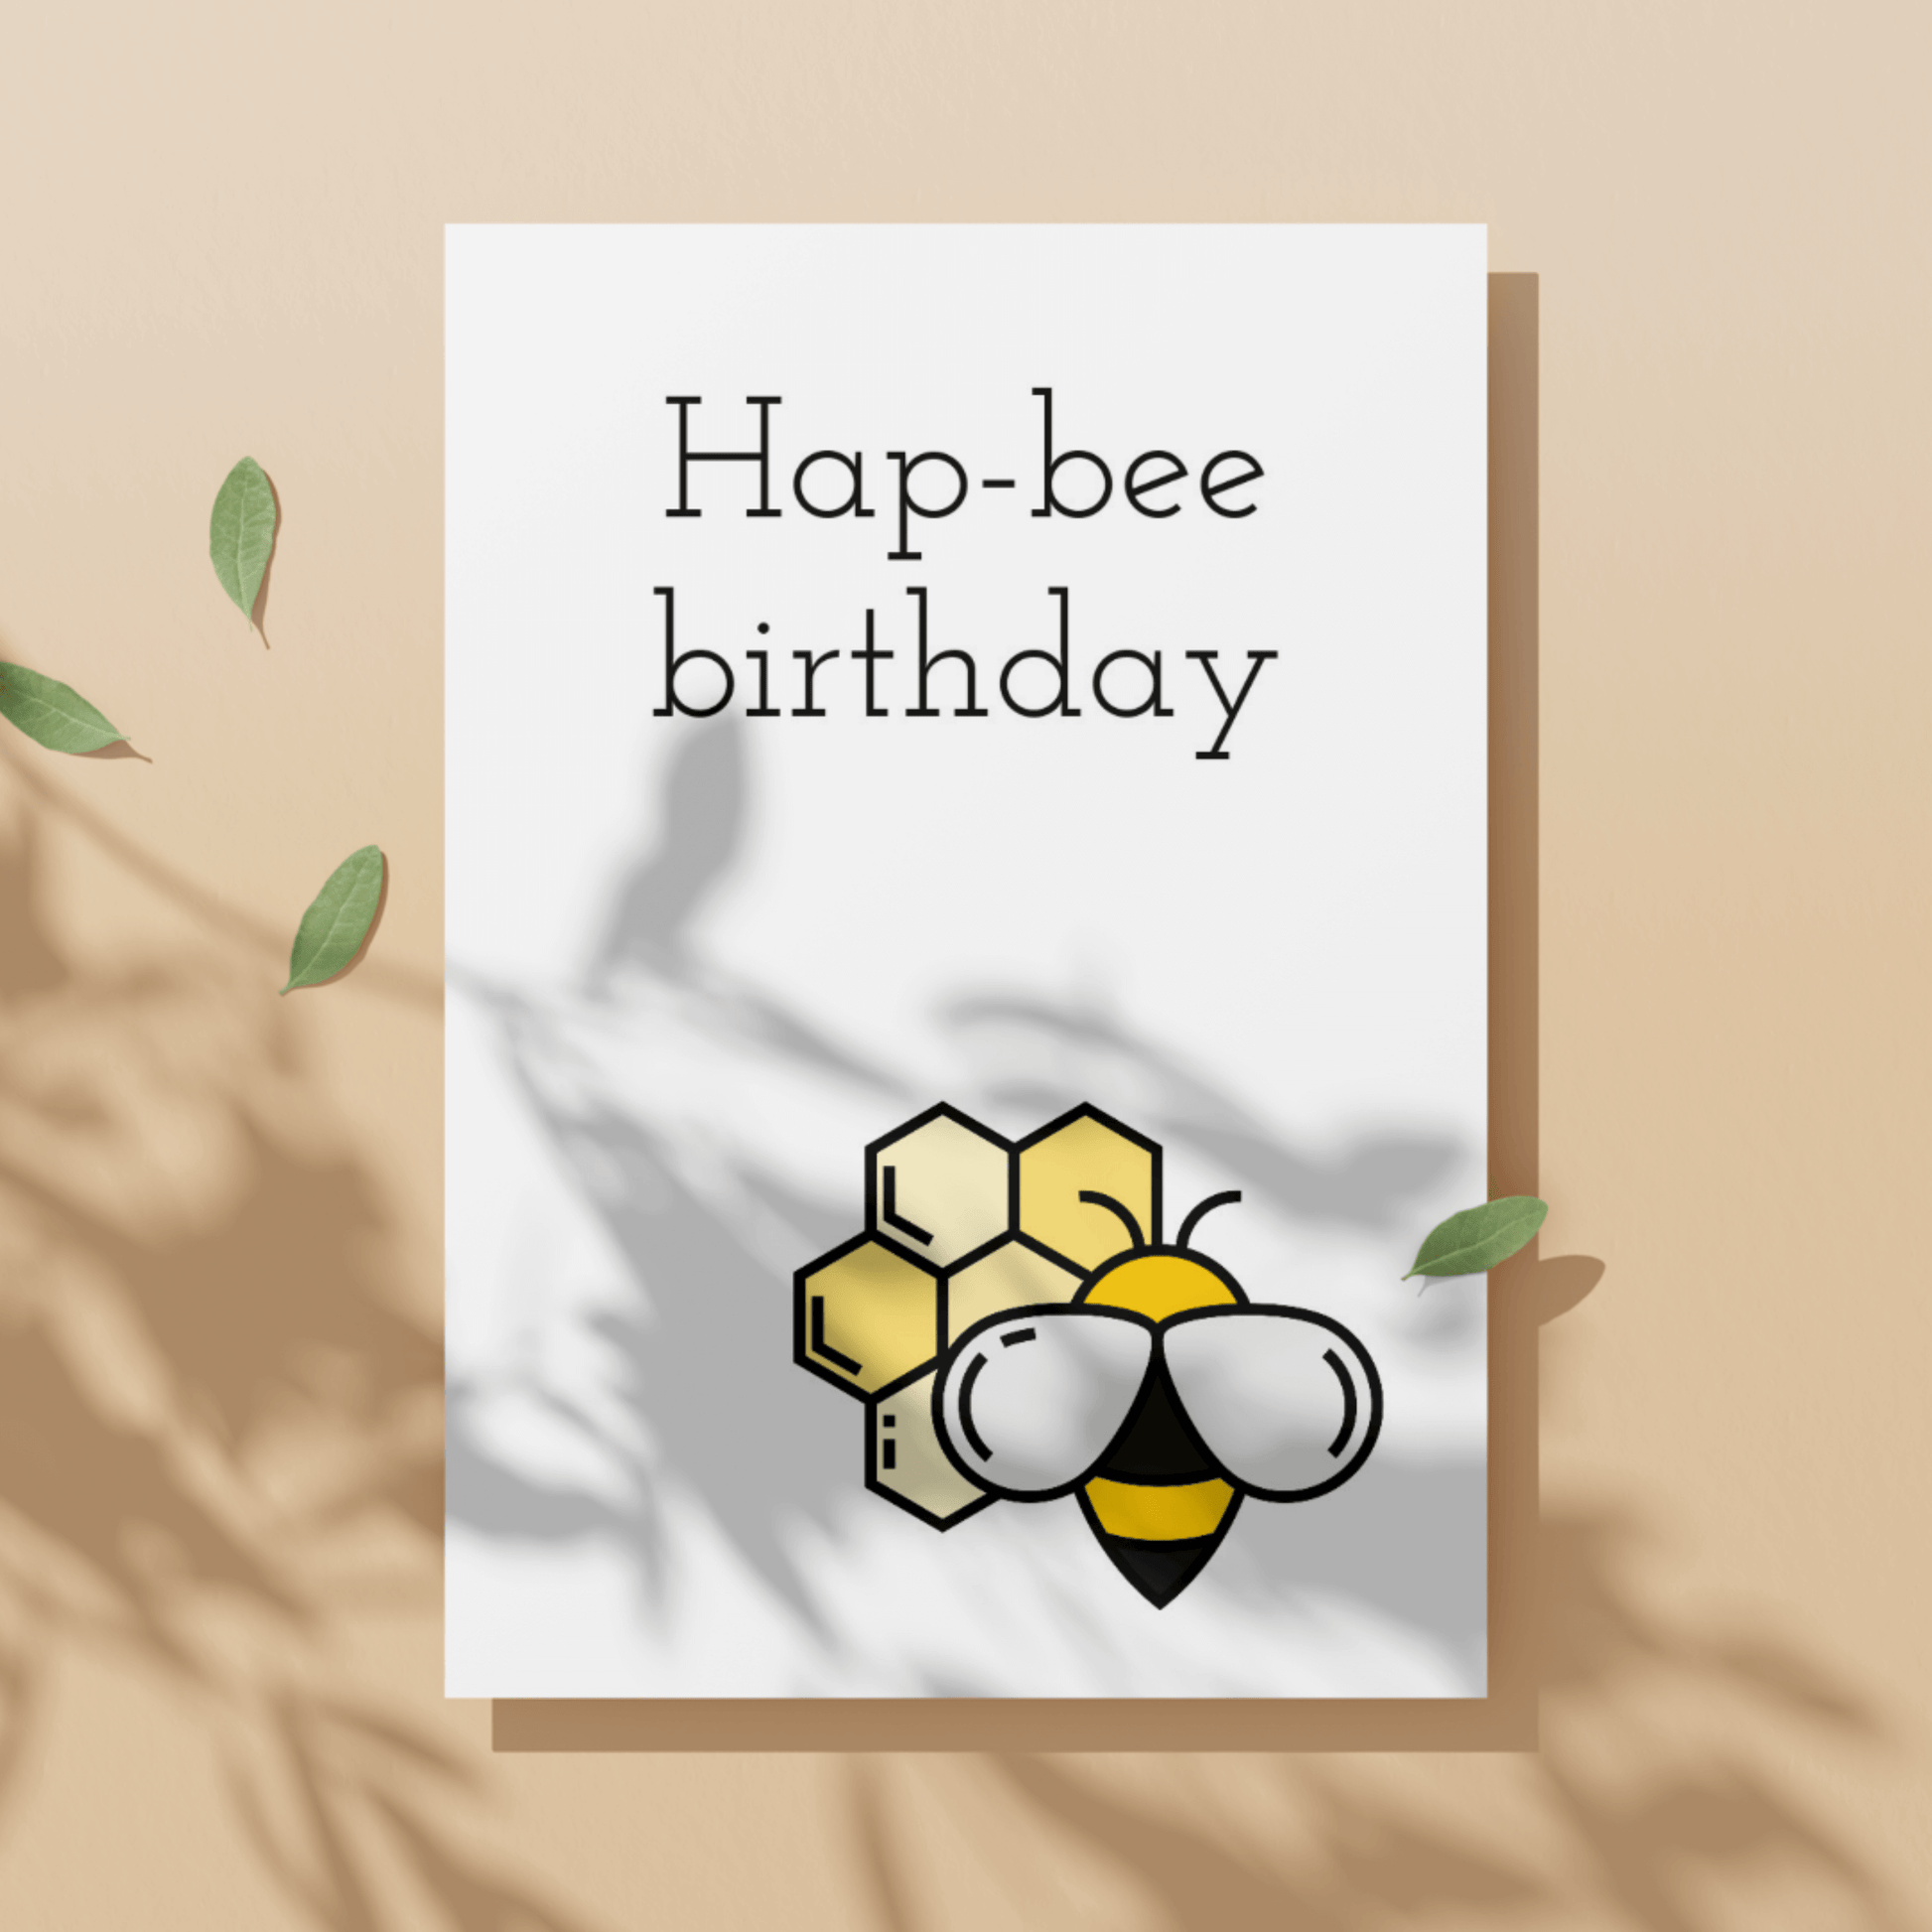 Little Kraken's Hap-bee Birthday, Birthday Cards for £3.50 each